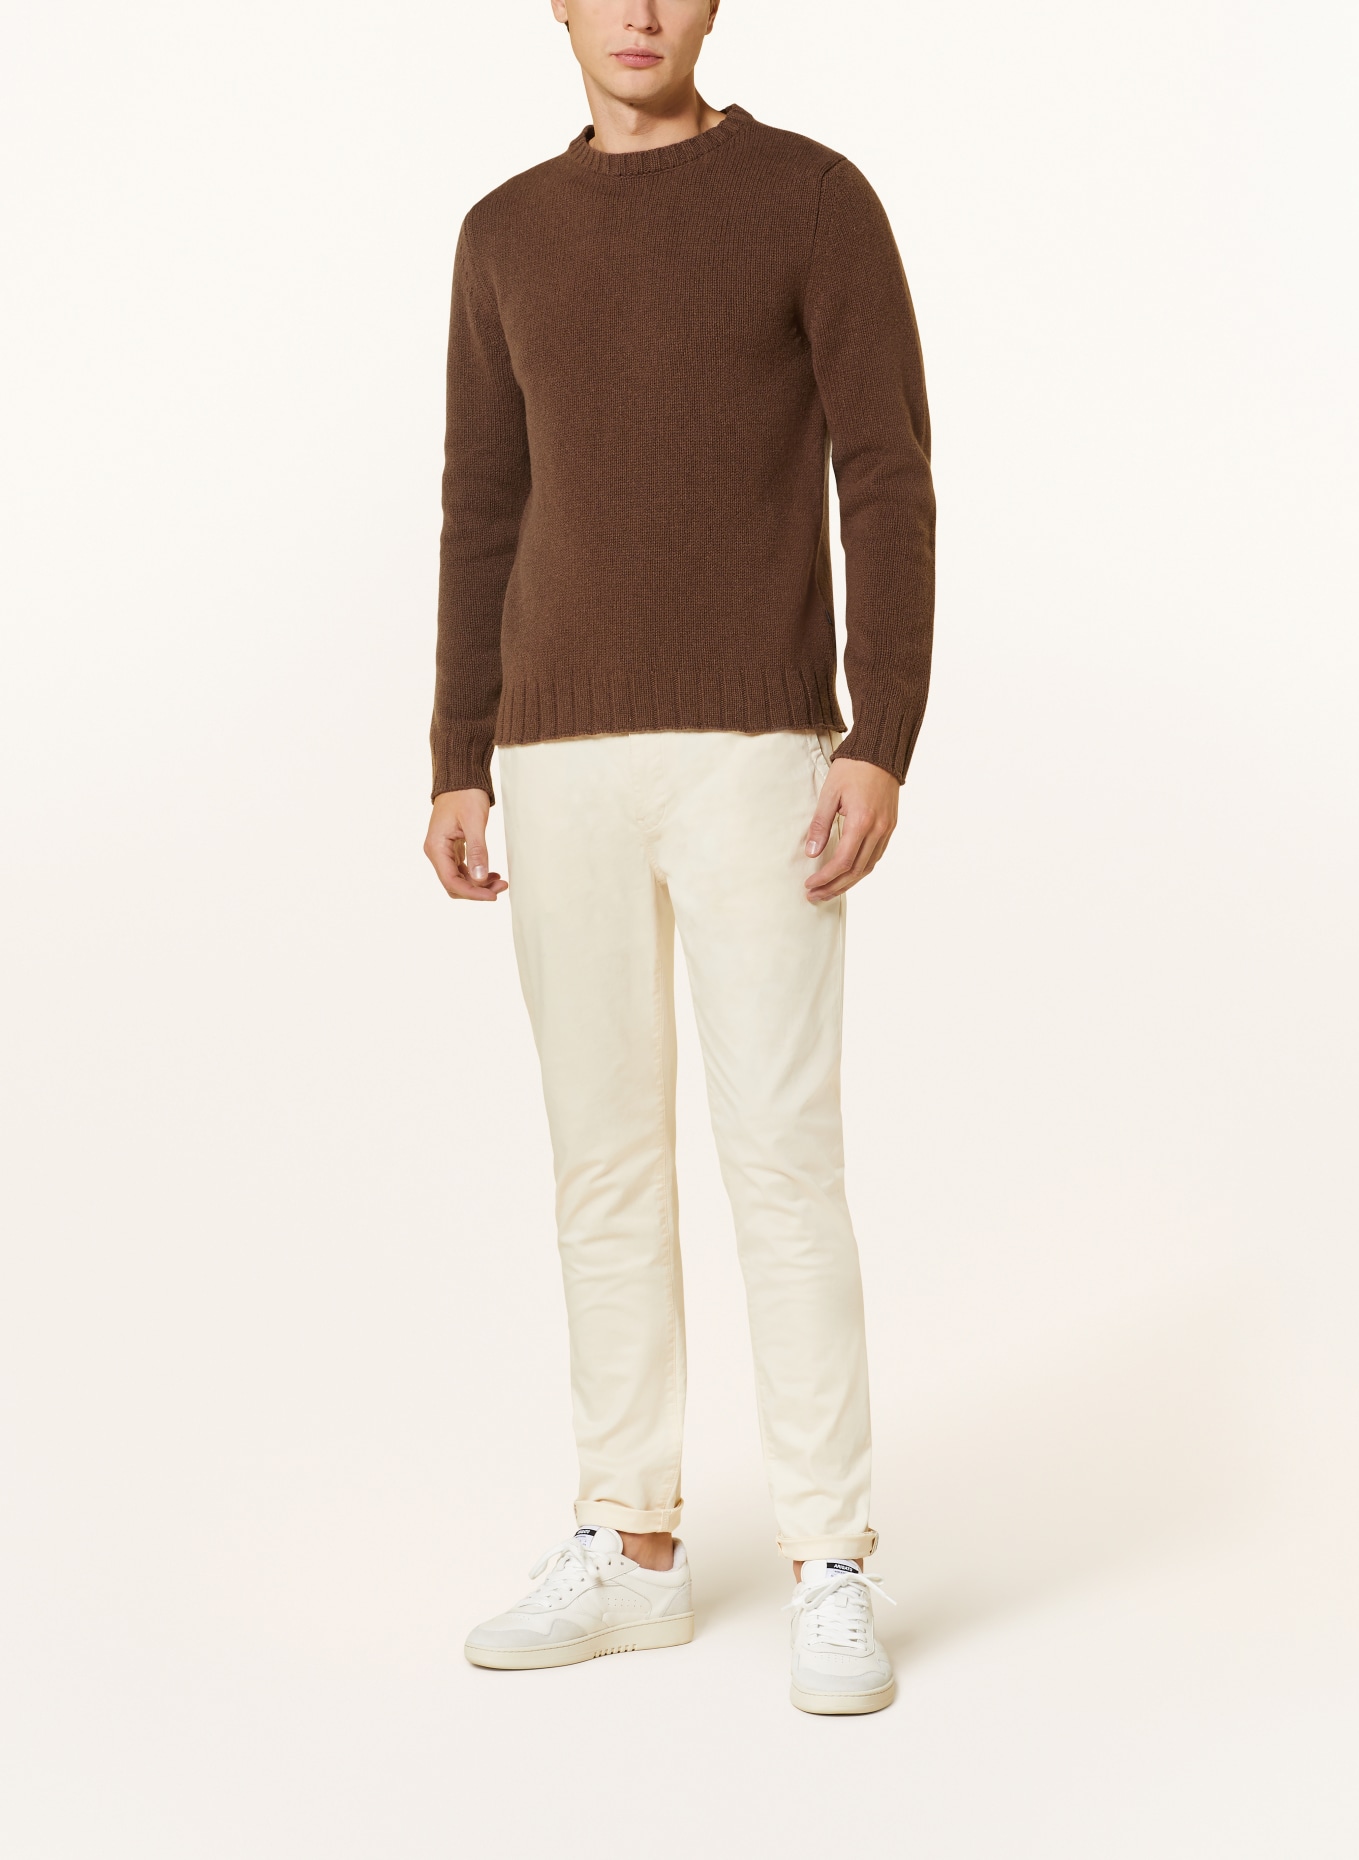 MAERZ MUENCHEN Pullover, Farbe: BRAUN (Bild 2)